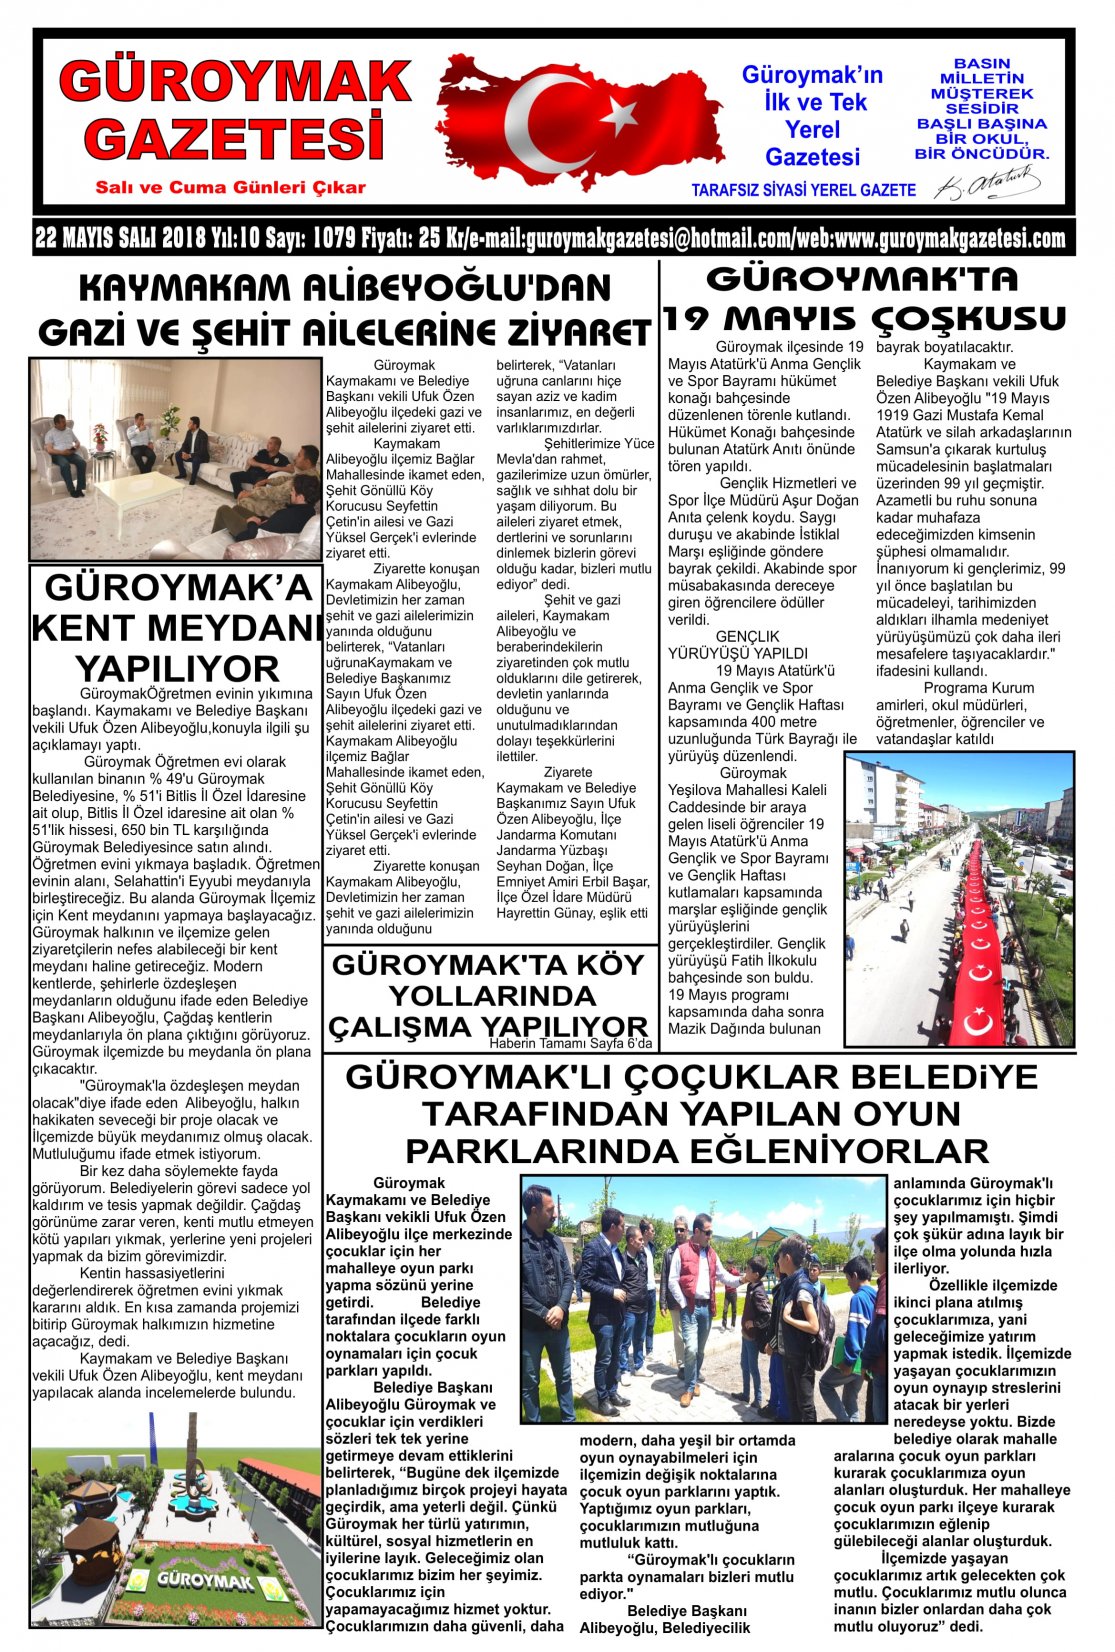 Güroymak Gazetesi 1-01.jpg Sayılı Gazete Küpürü